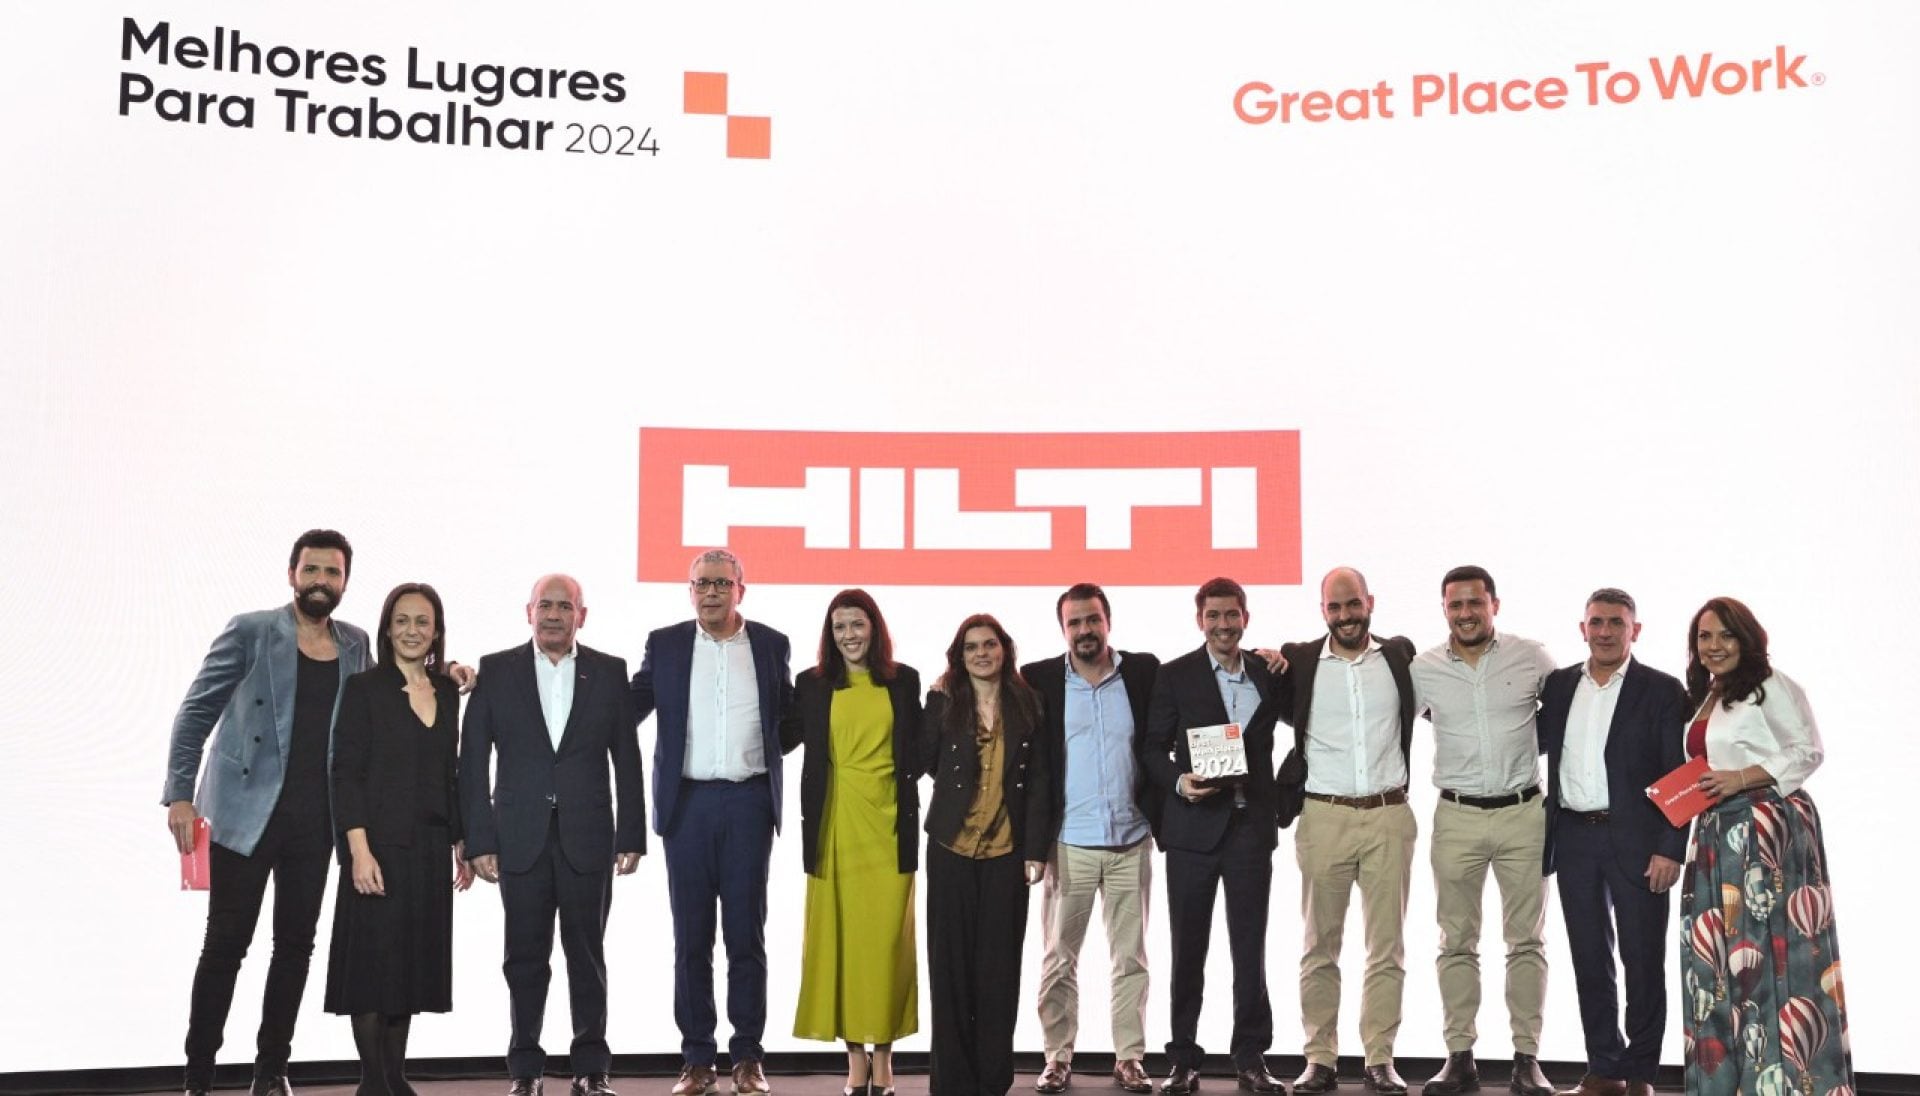 A Hilti Portugal recebeu o prémio de melhor lugar para trabalhar em Portugal, pela Great Place to Work®